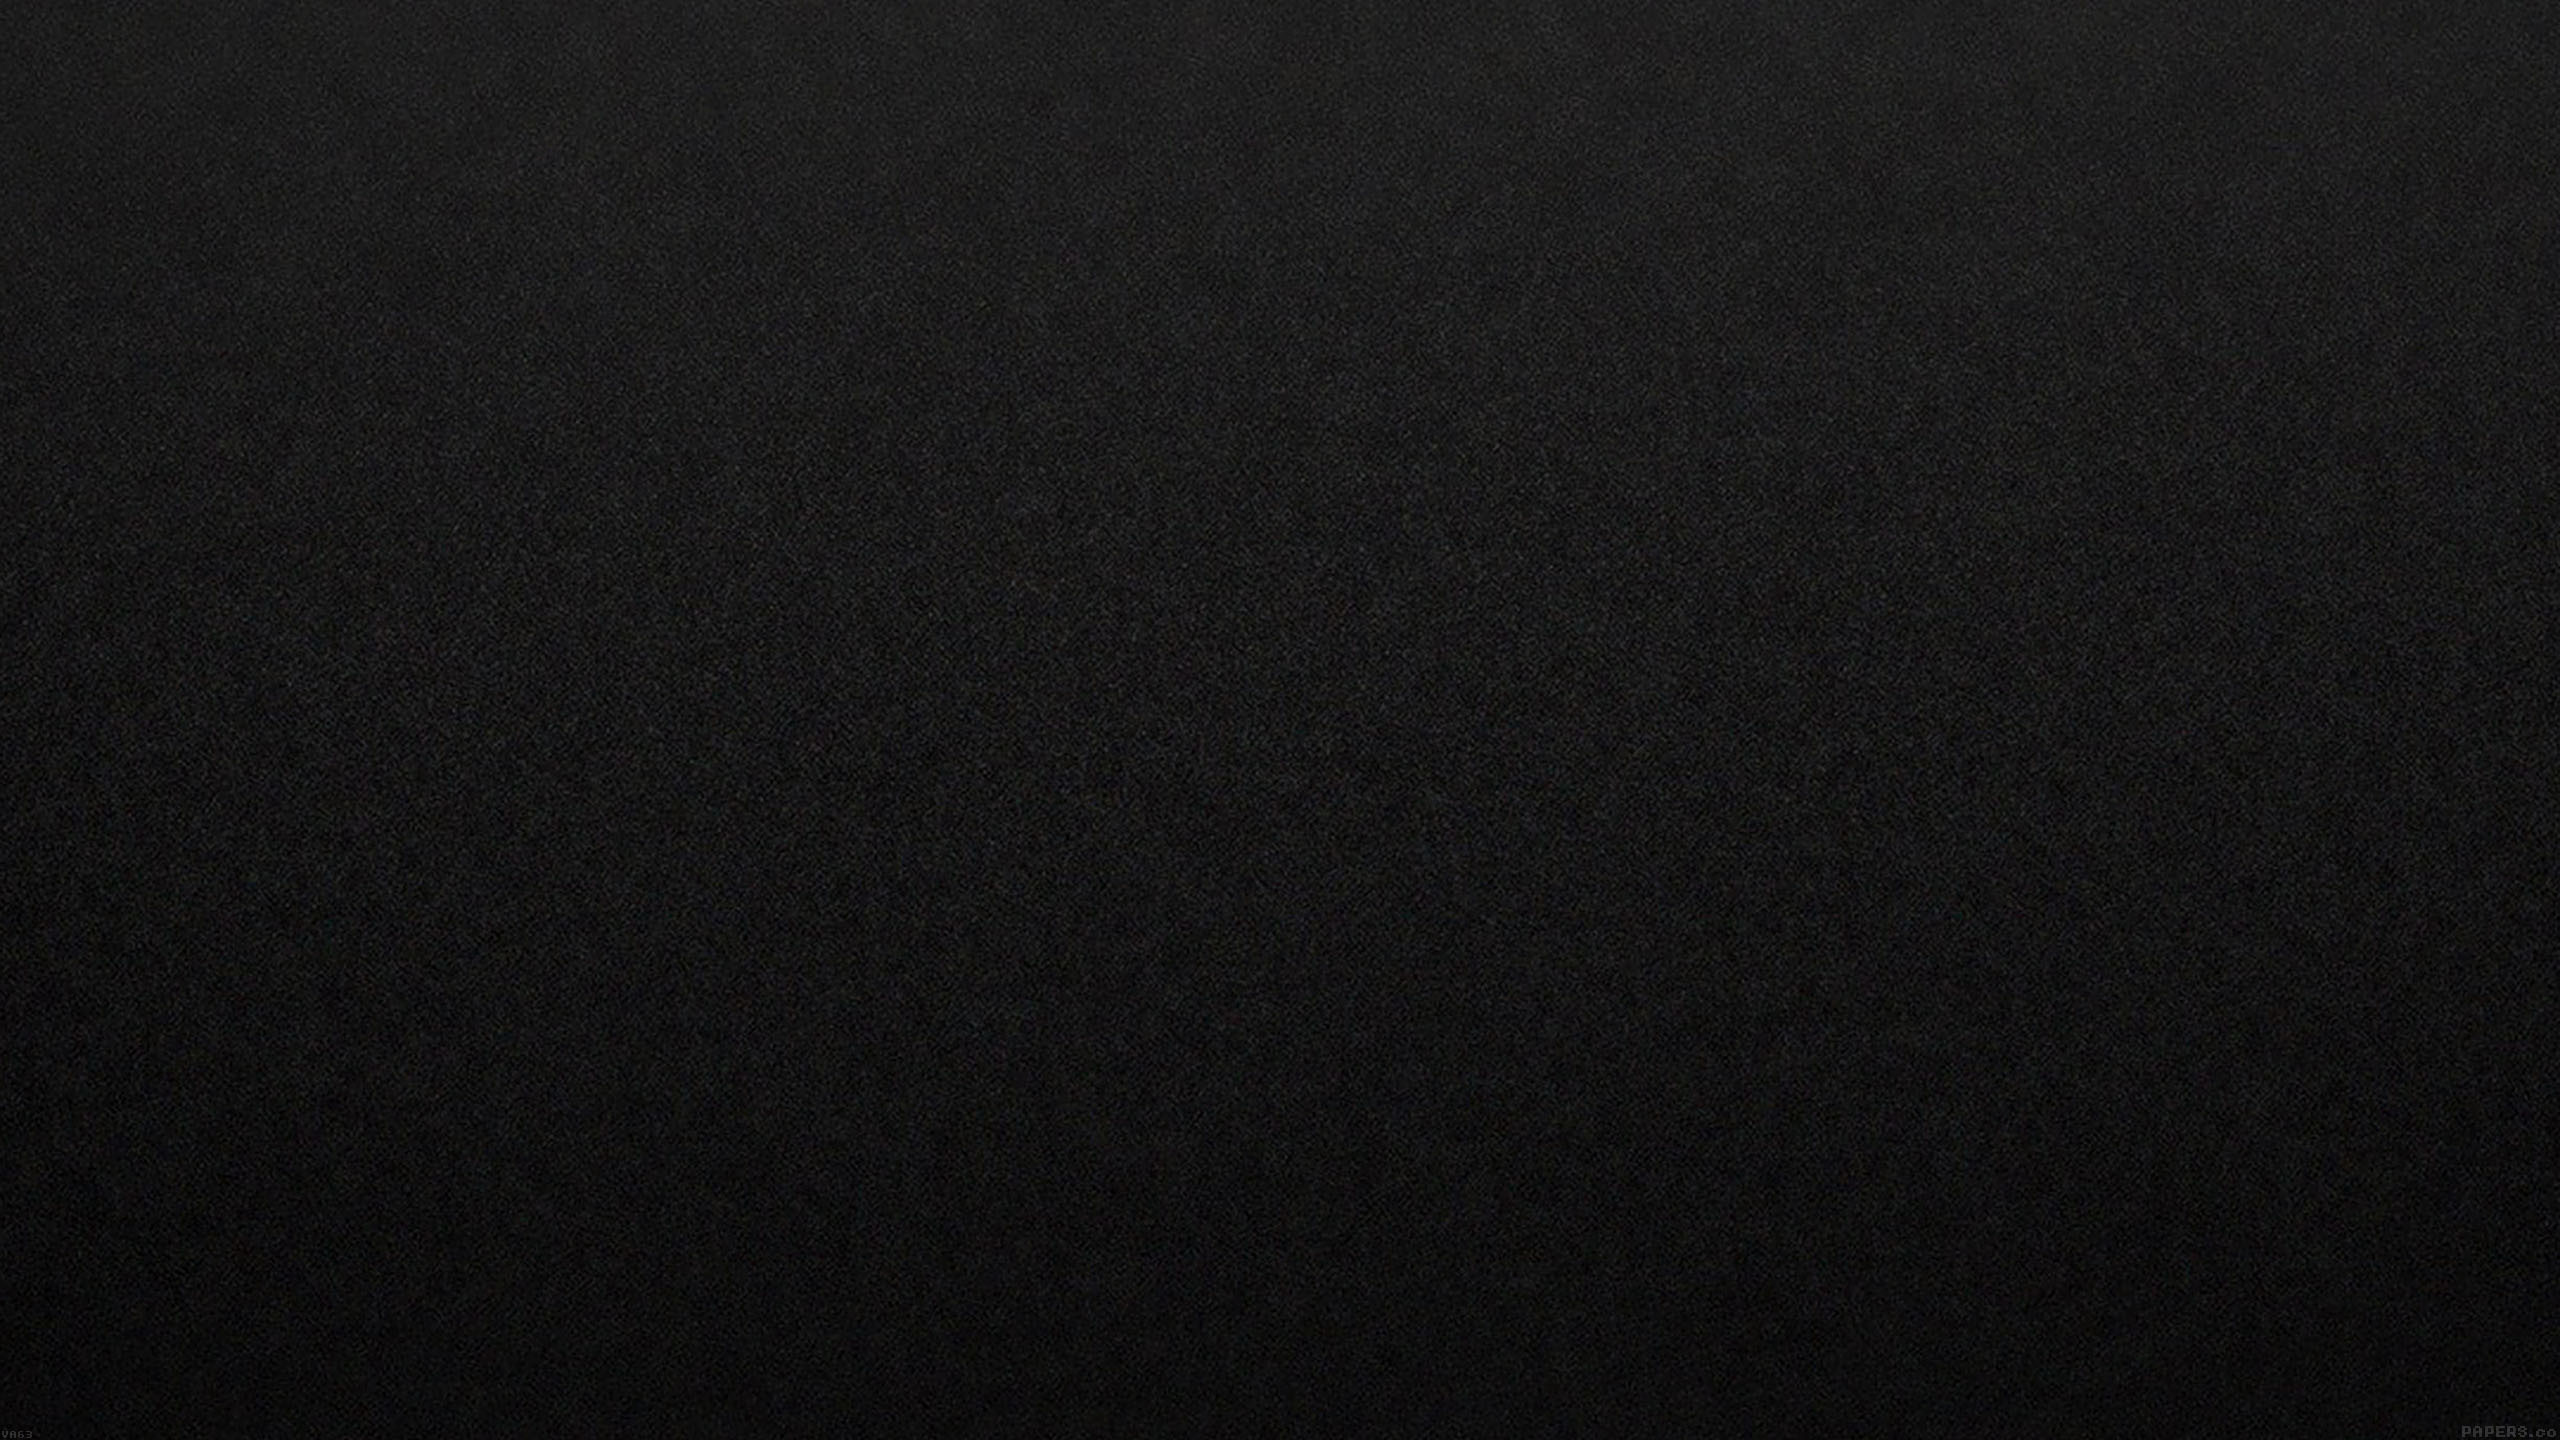 2560x1440 Black Carbon Fiber wallpaper